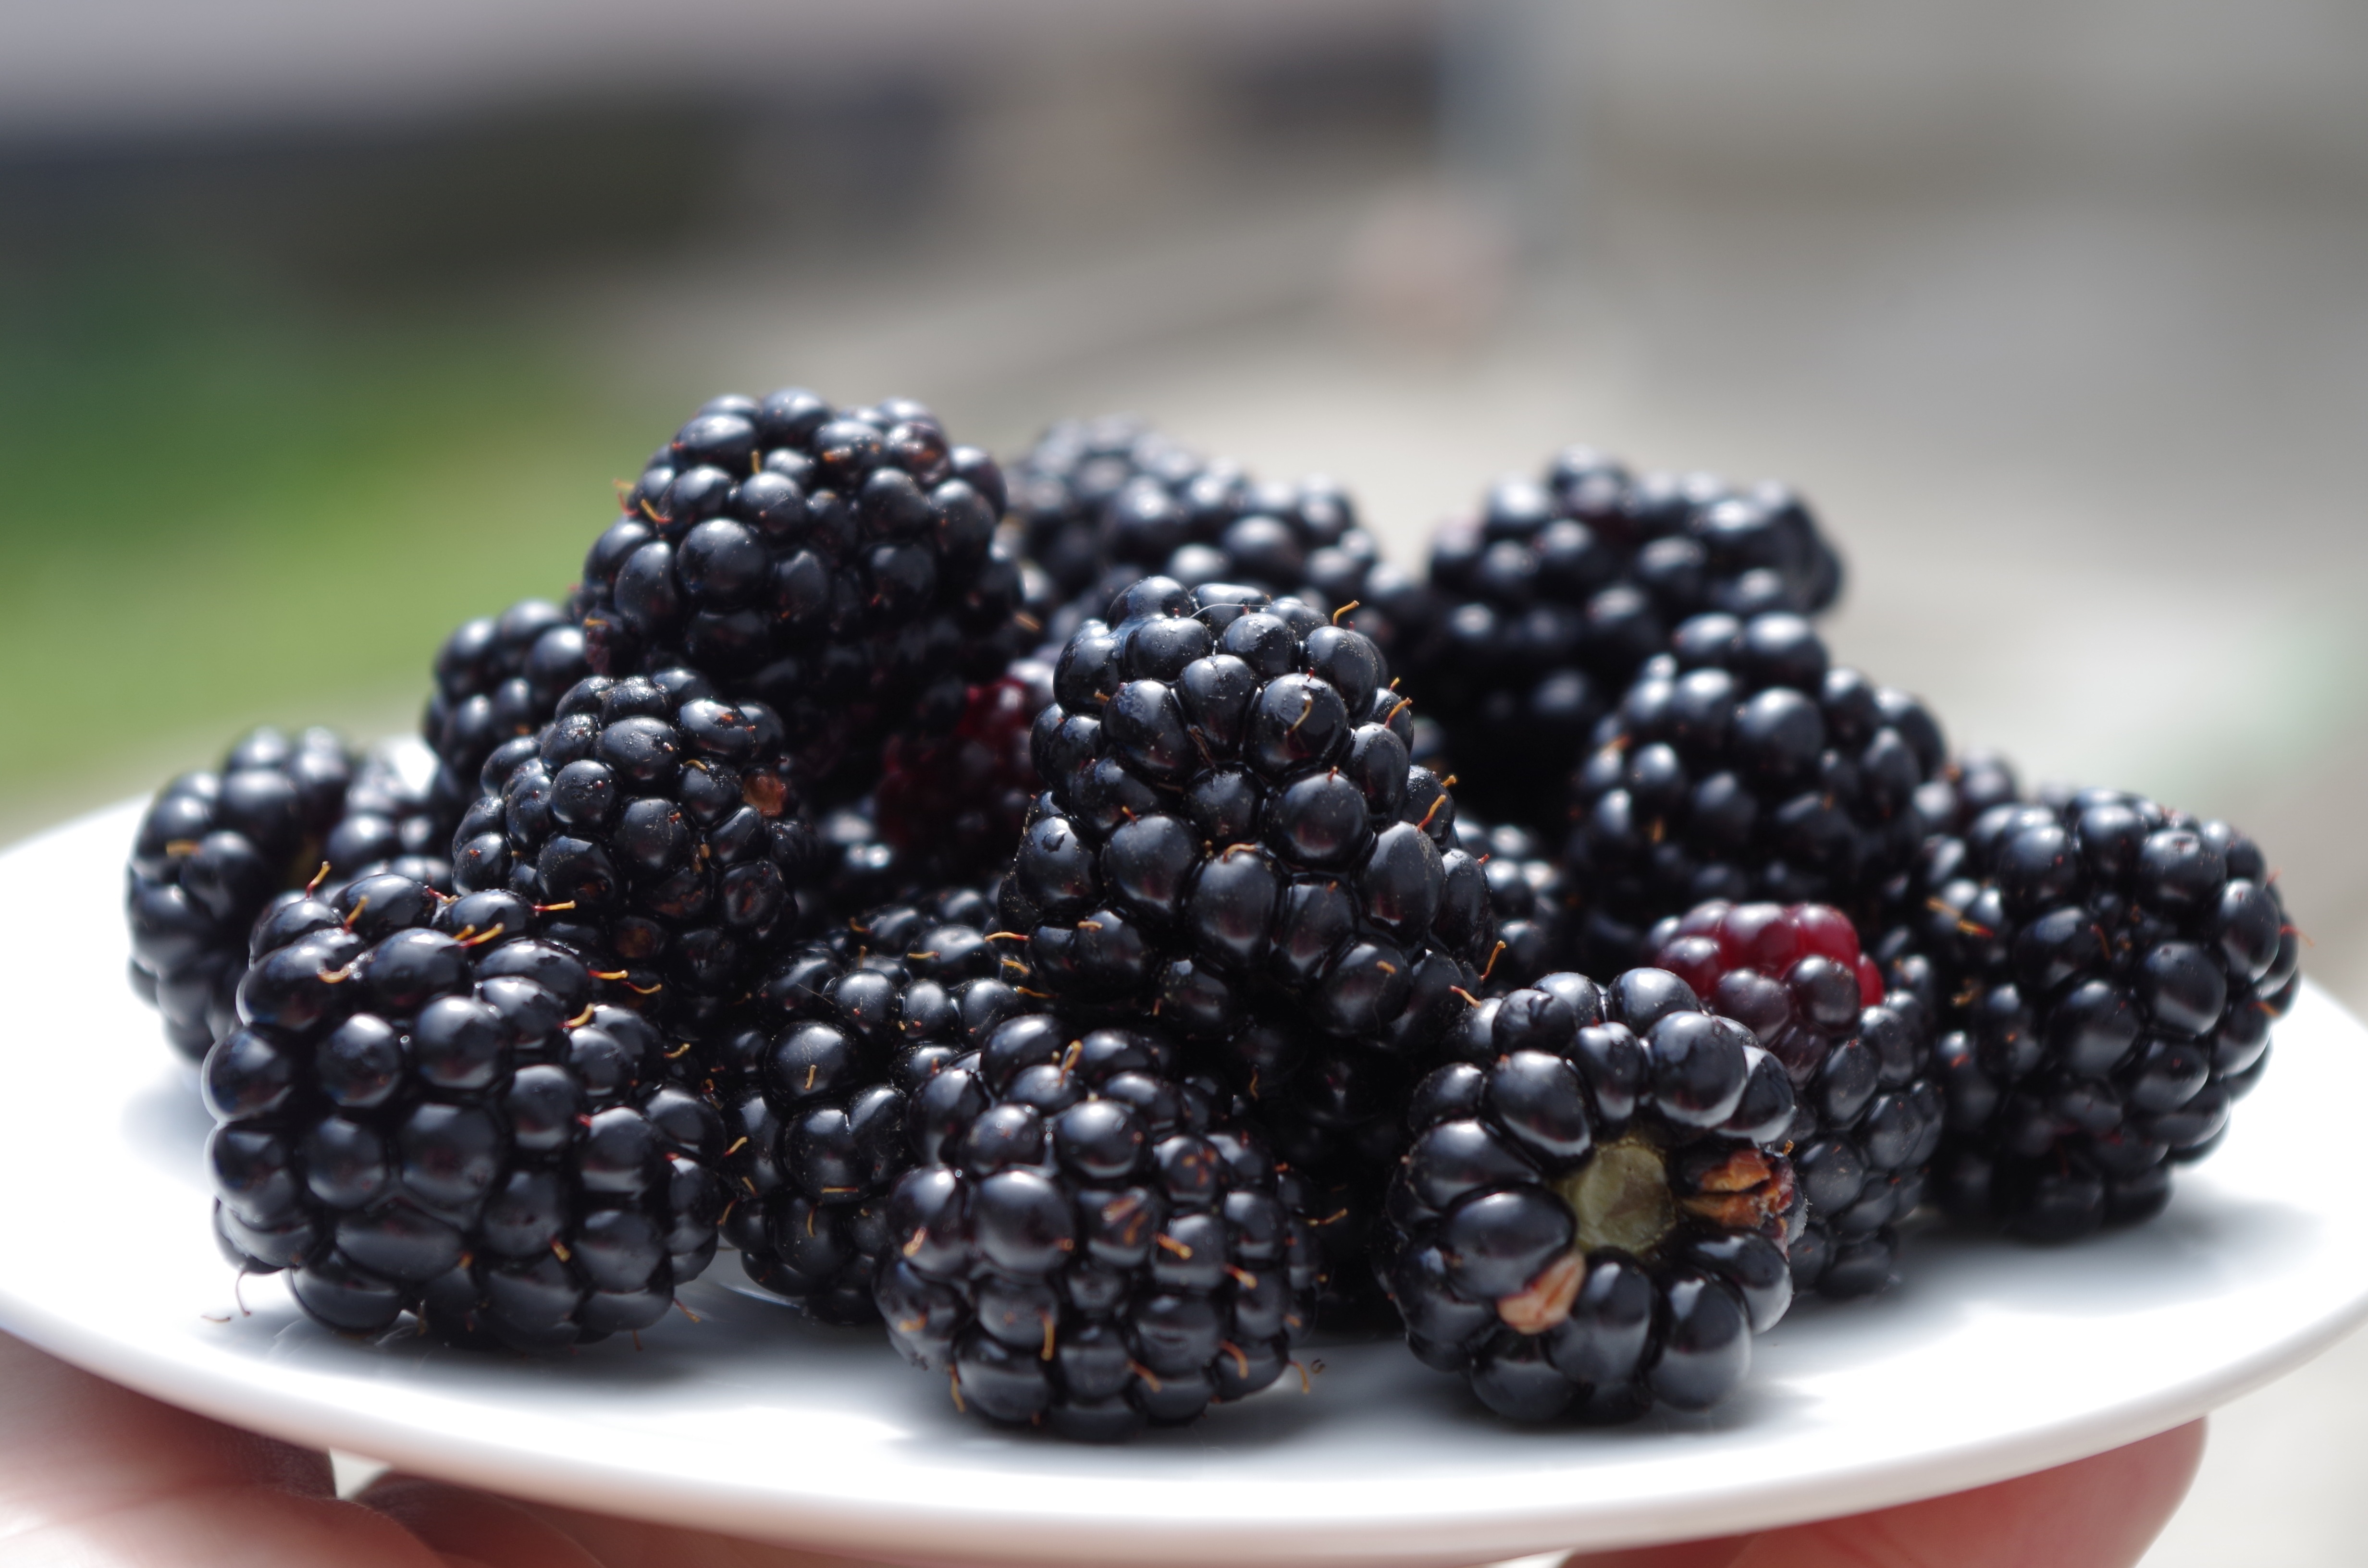 Black, Blackberries, Fruit, On A Plate, fruit, blackberry - fruit